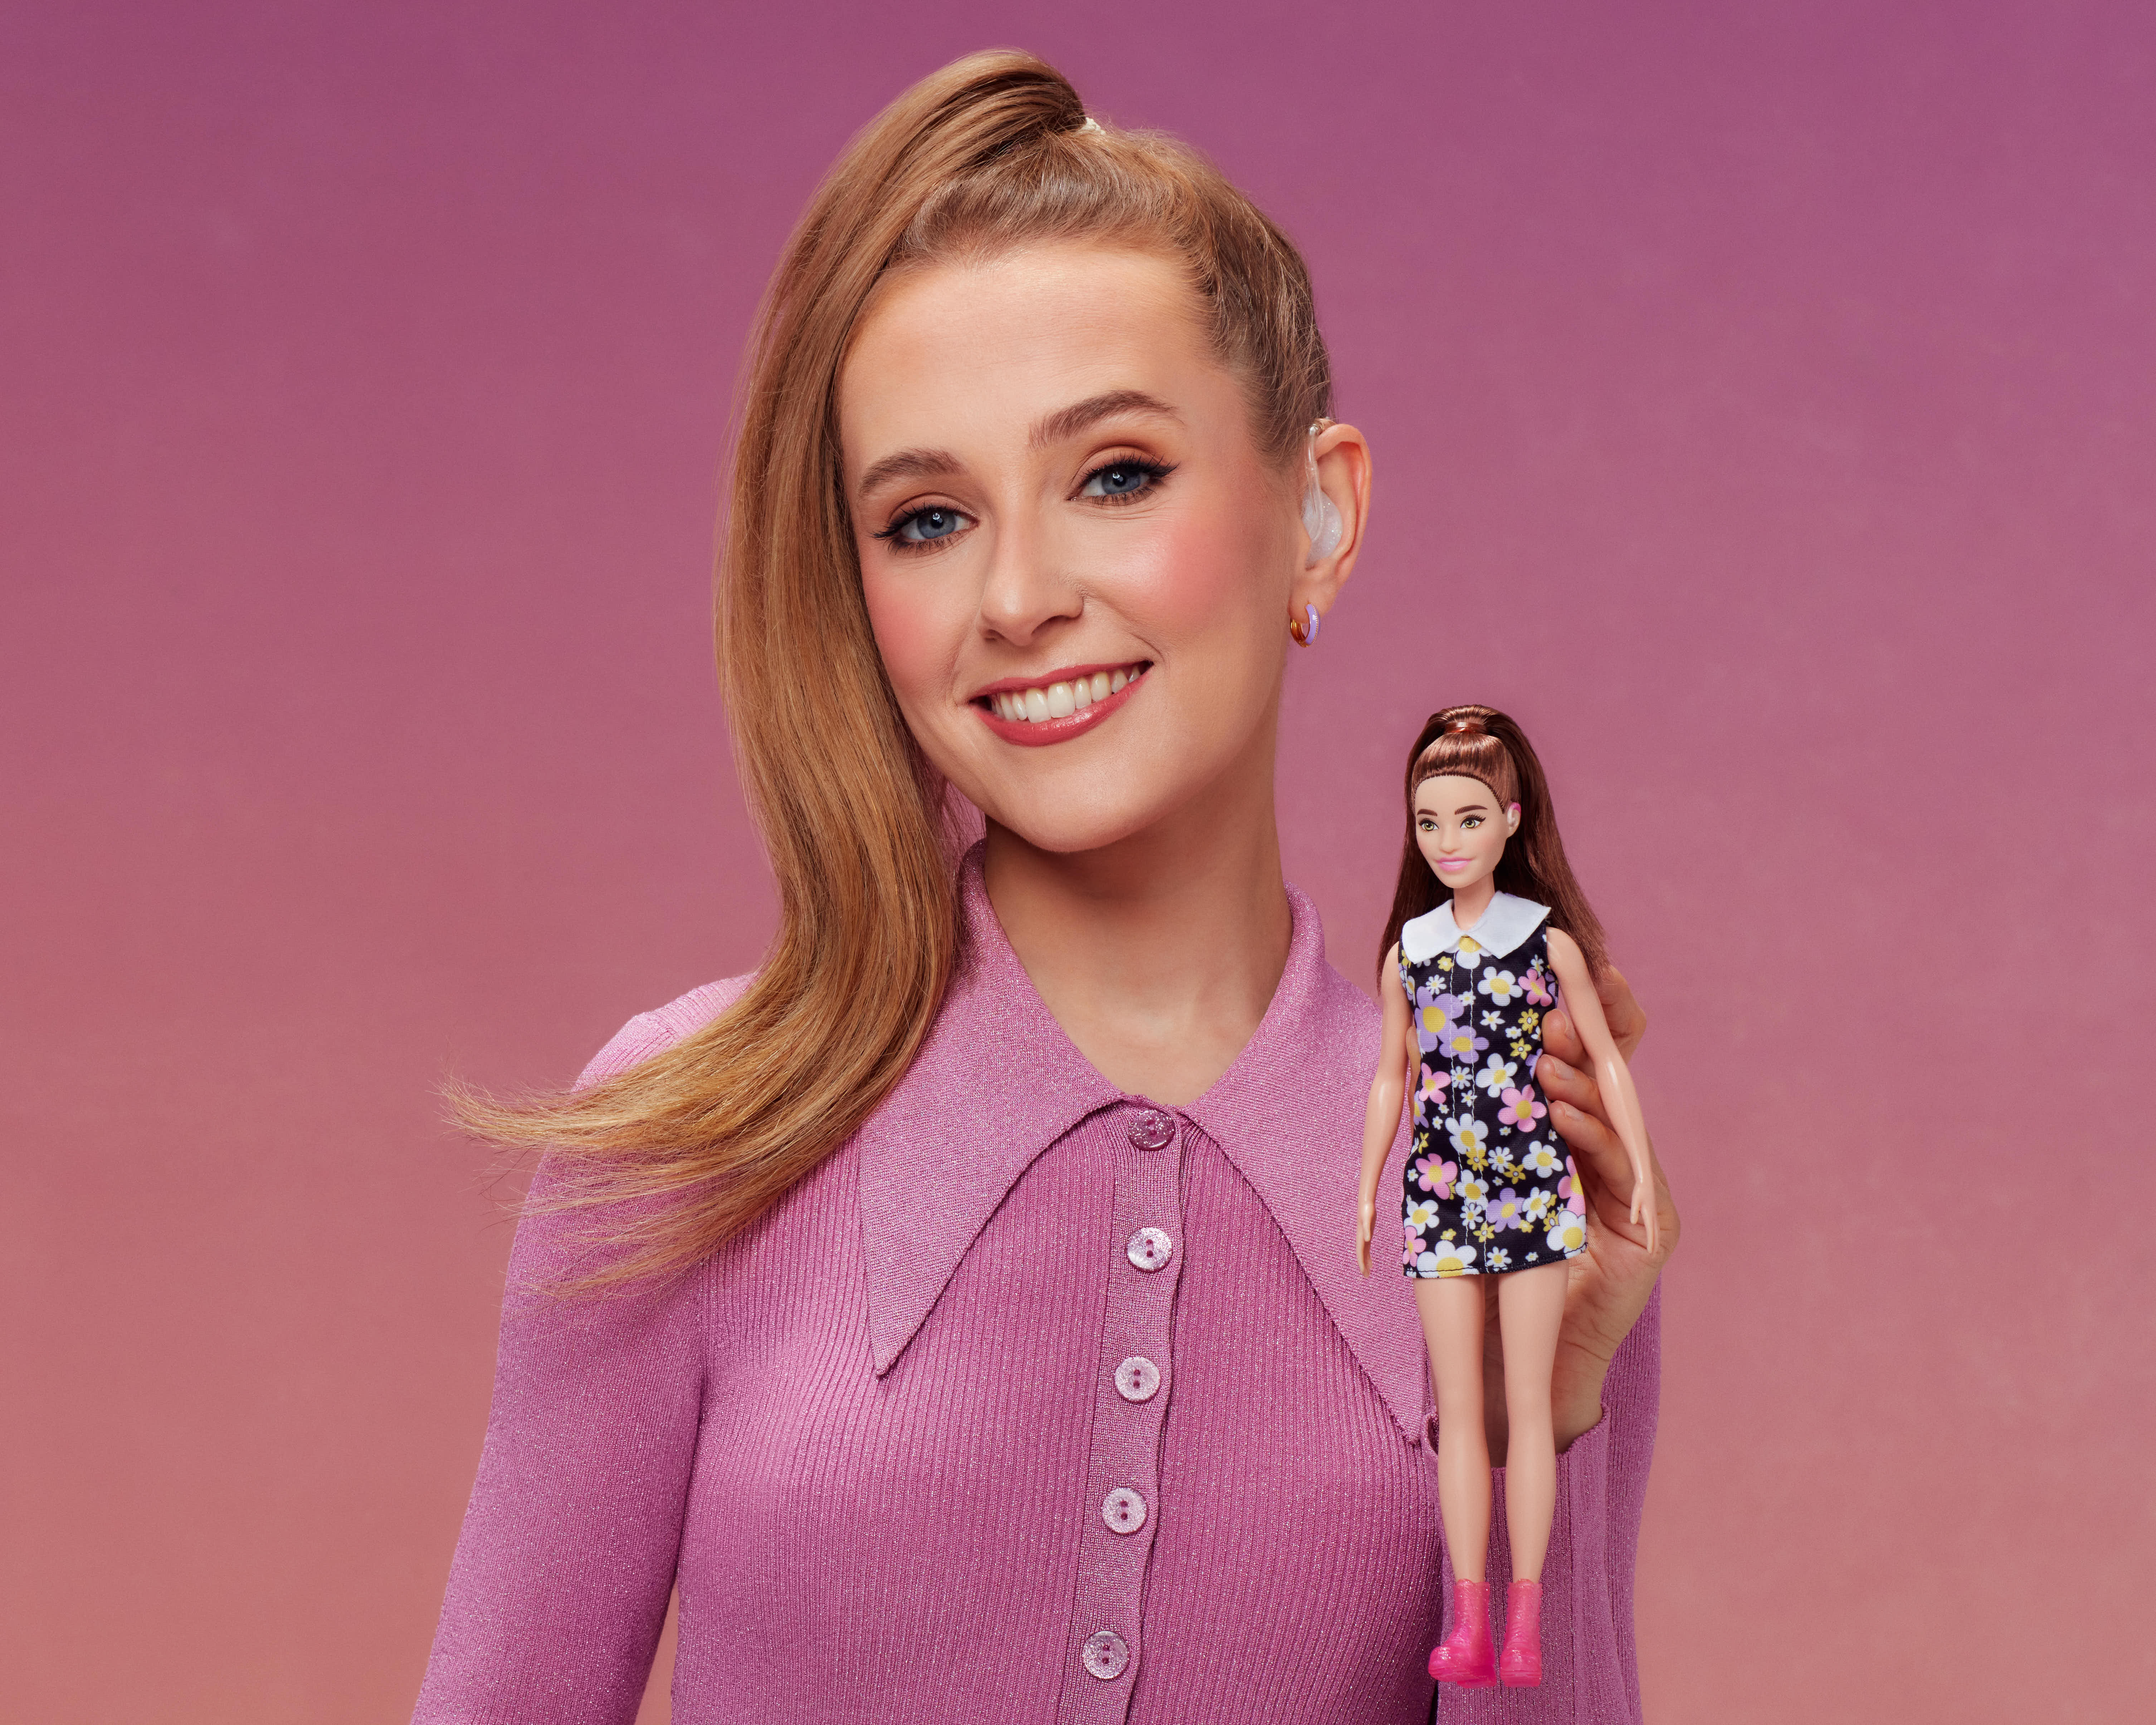 100 ideias de Coisas de barbie  coisas de barbie, barbie, decoração barbie